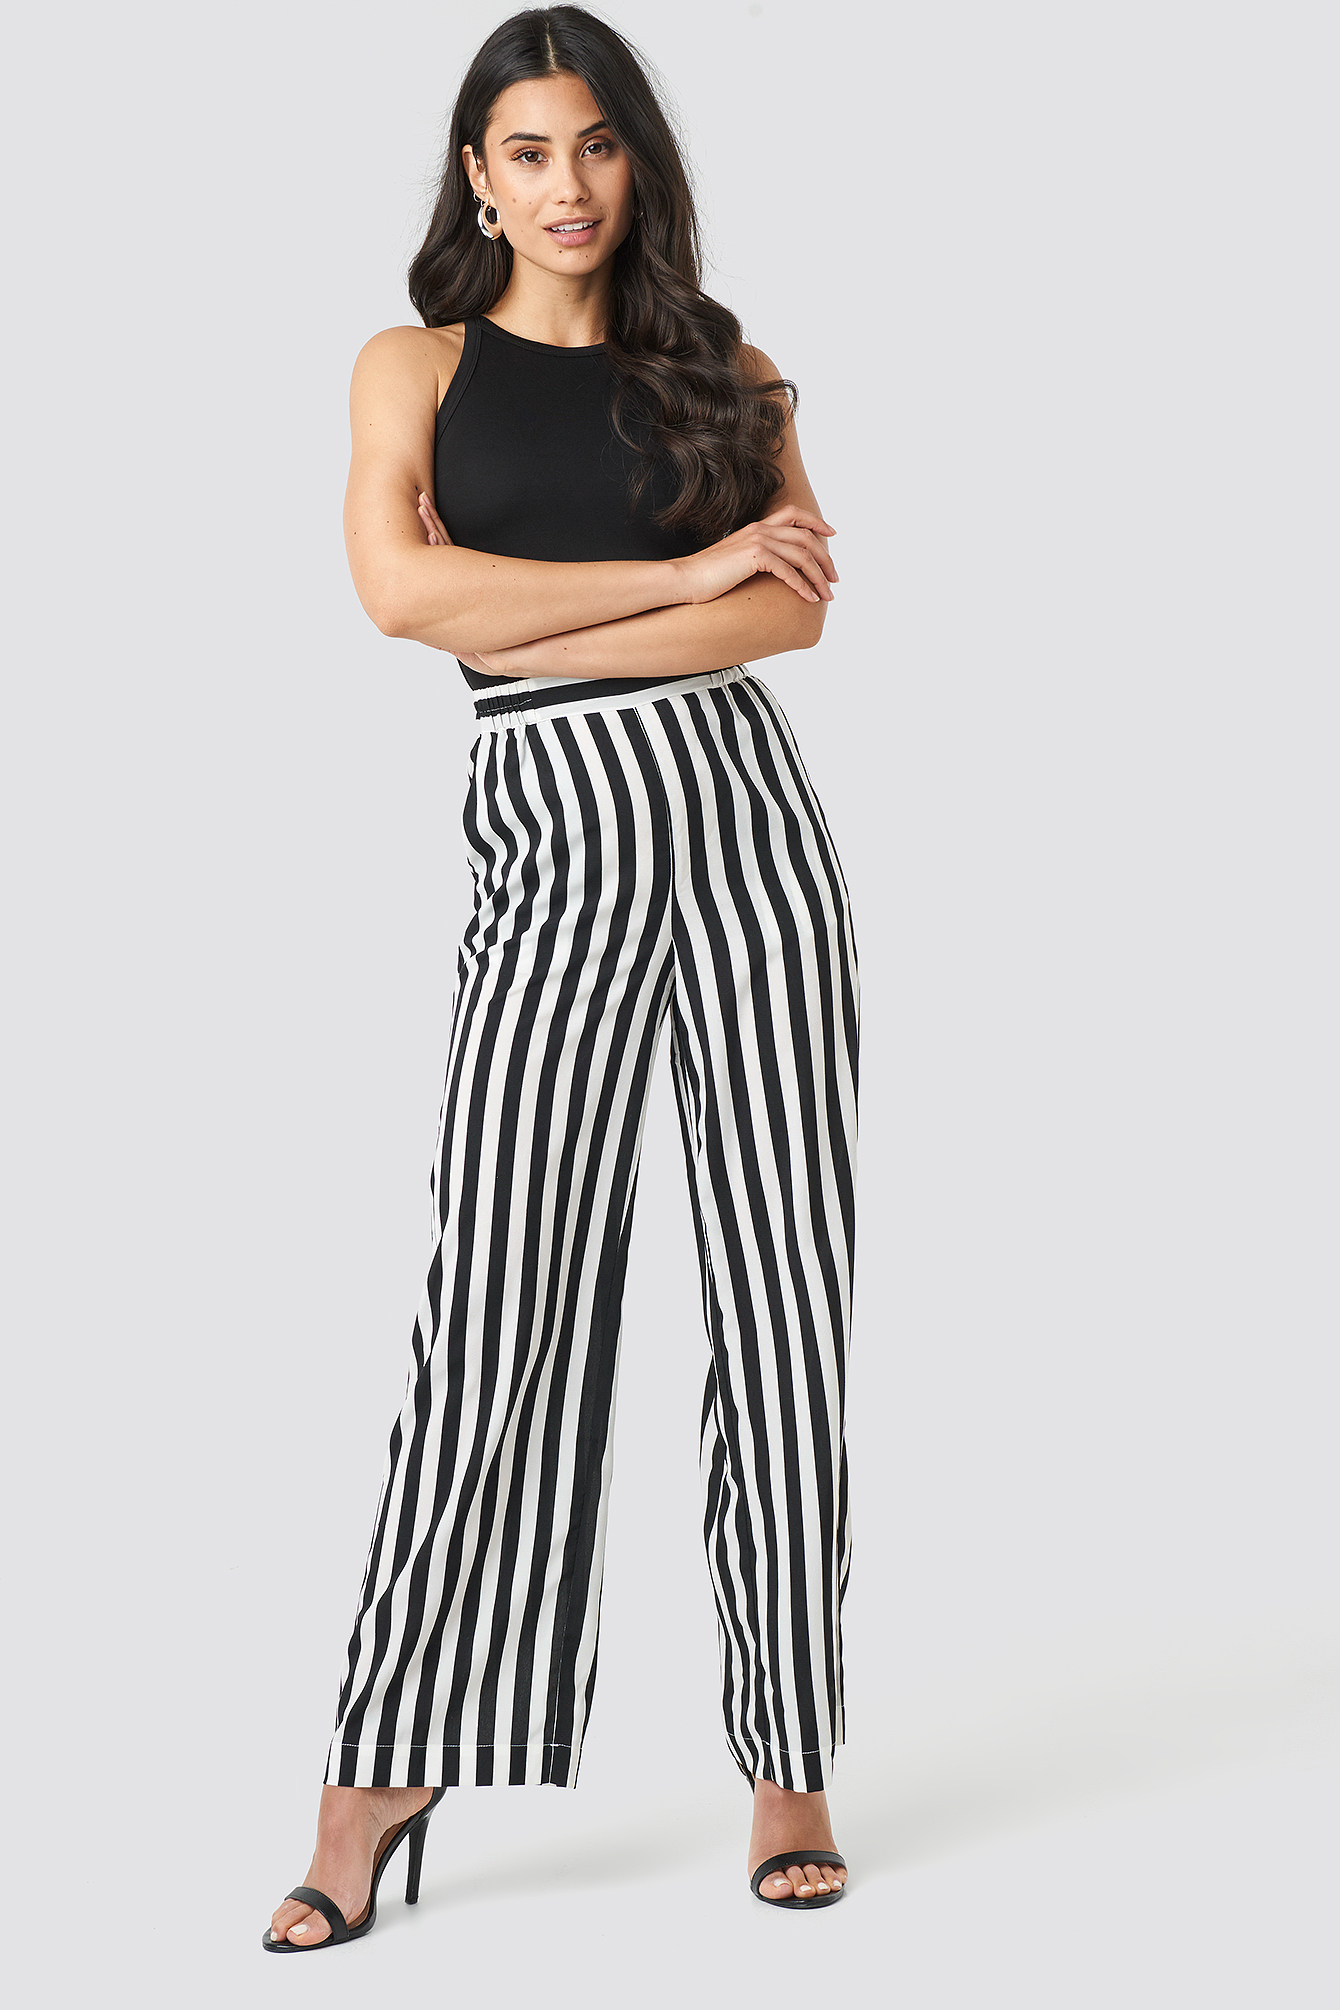 black striped pants